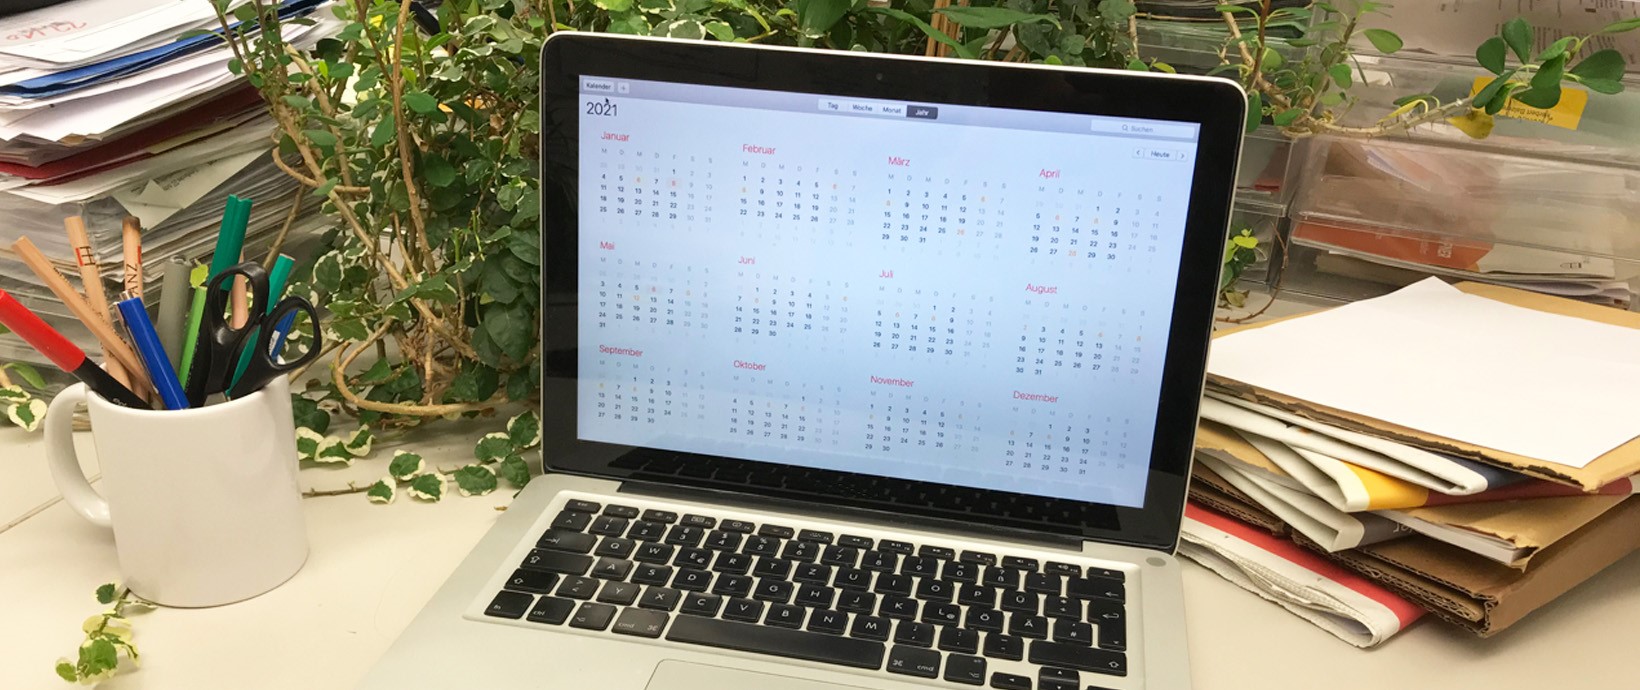 Laptop mit Kalenderansicht auf Schreibtisch, im Hintergrund Pflanzen, Zeitschriften und Schreibutensilien